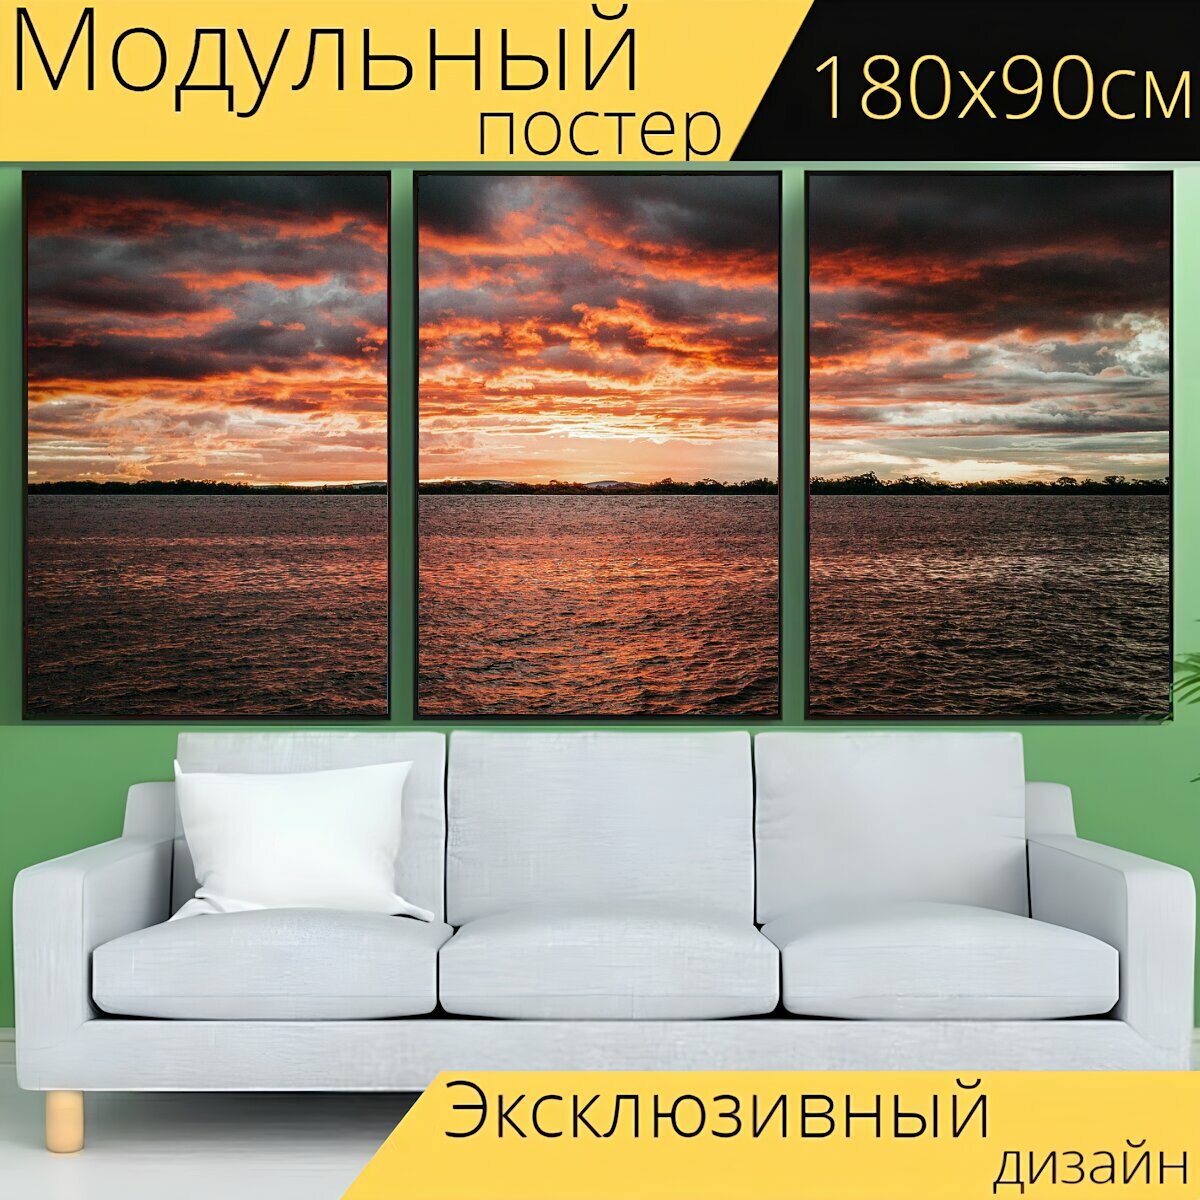 Модульный постер "Море, небо, заход солнца" 180 x 90 см. для интерьера